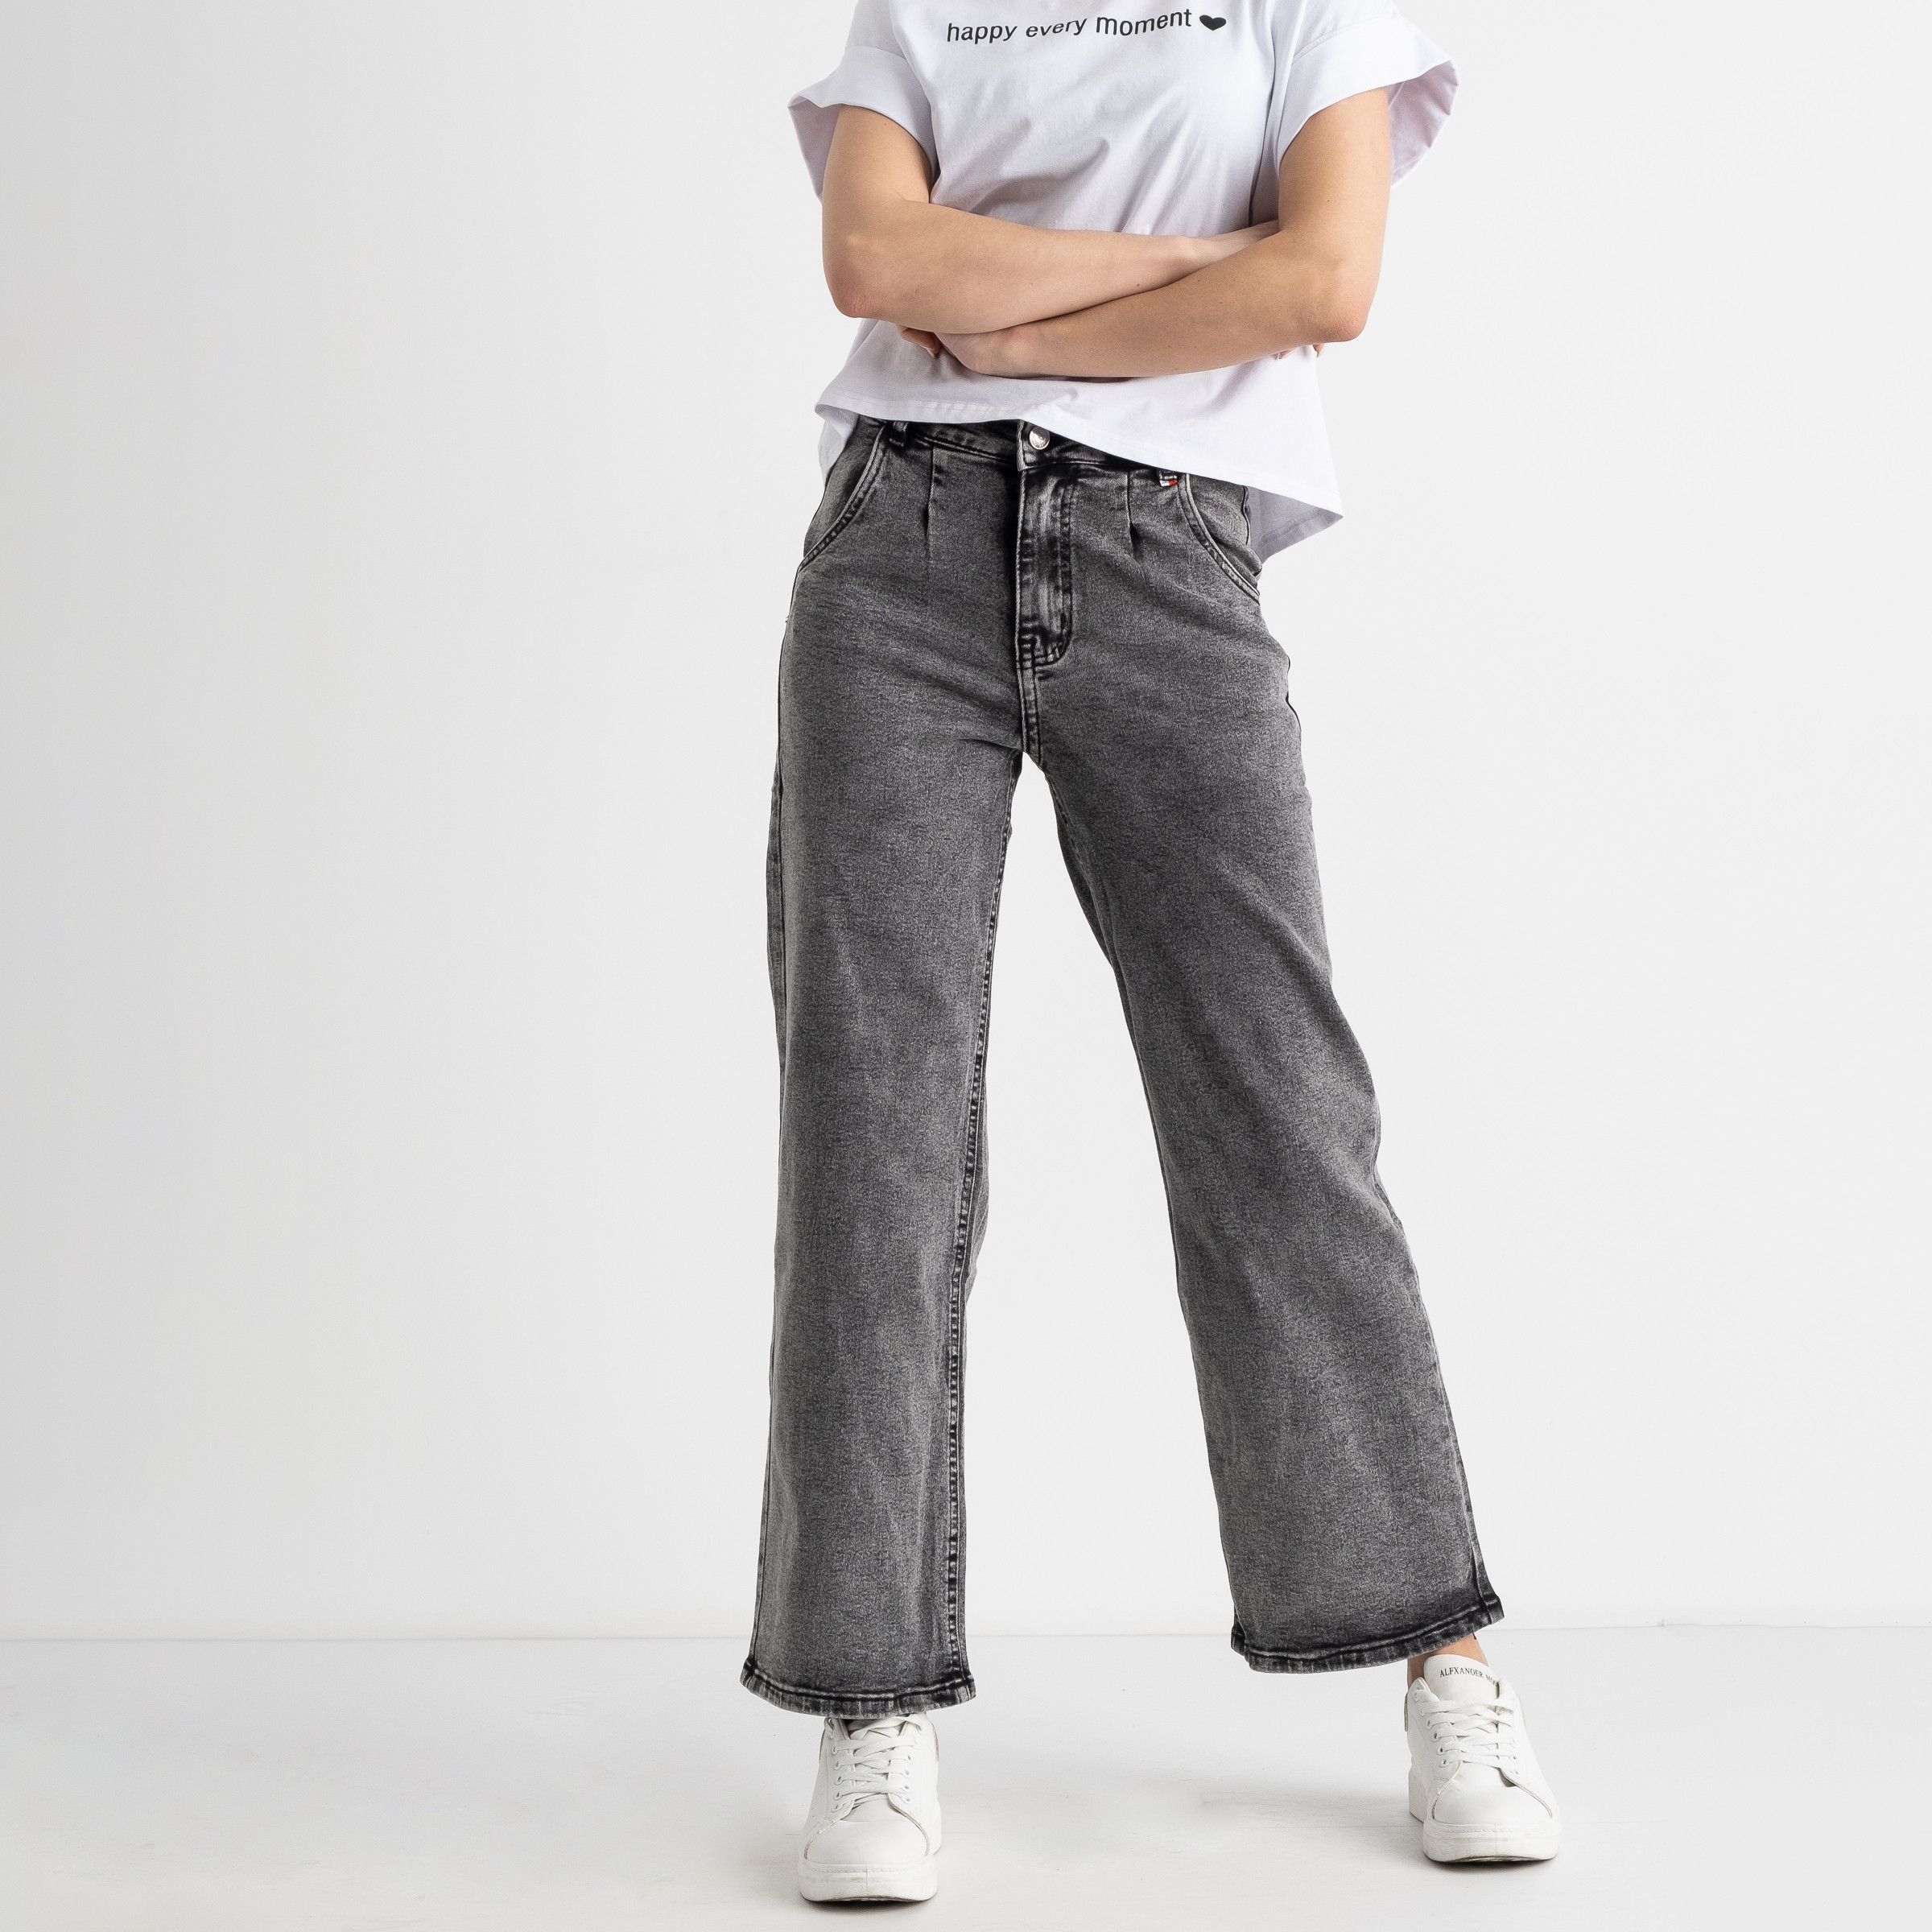 0045-9 WF Relucky джинсы-кюлоты женские серые стрейчевые ( 6 ед. размеры : 25.26.27.28.29.30)